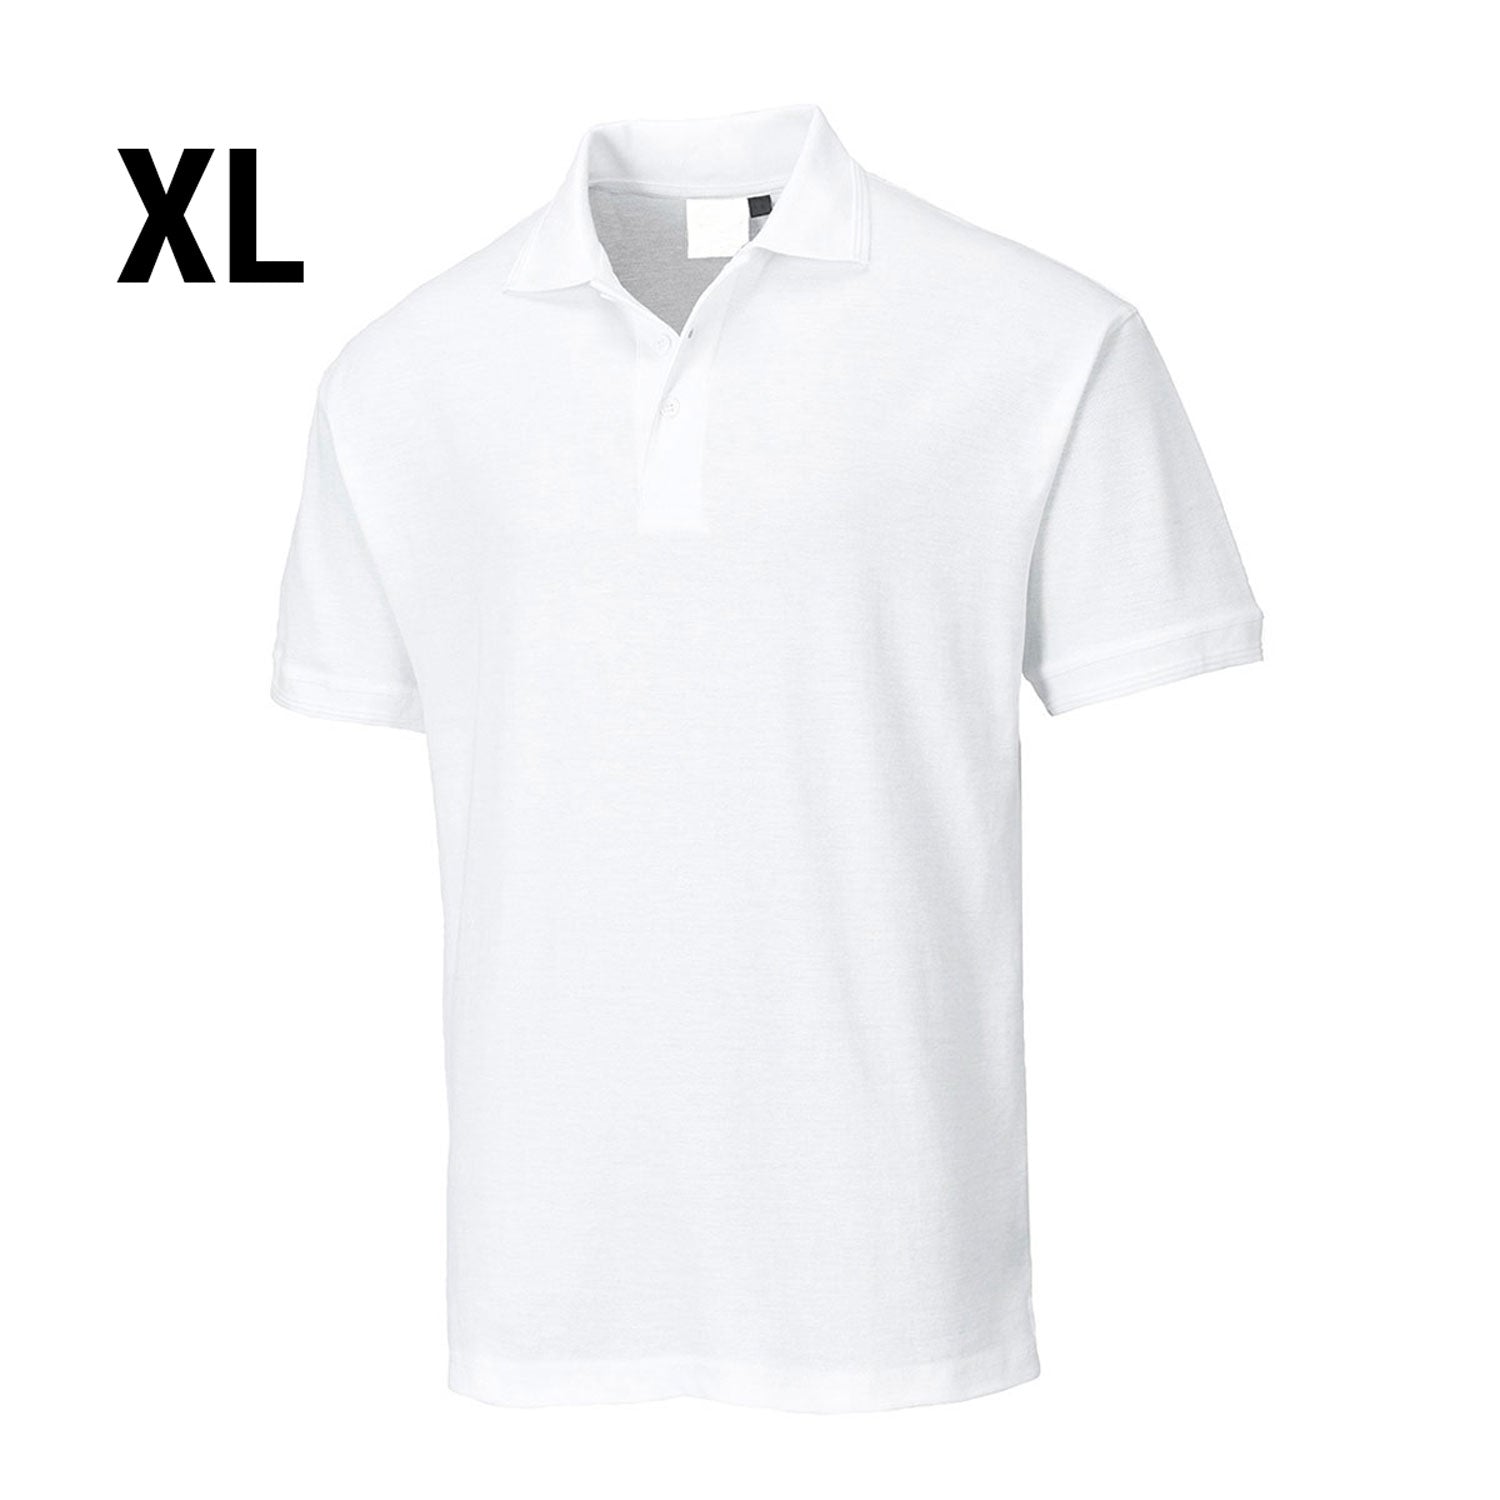 Poloshirt til mænd - Hvid - Størrelse: XL